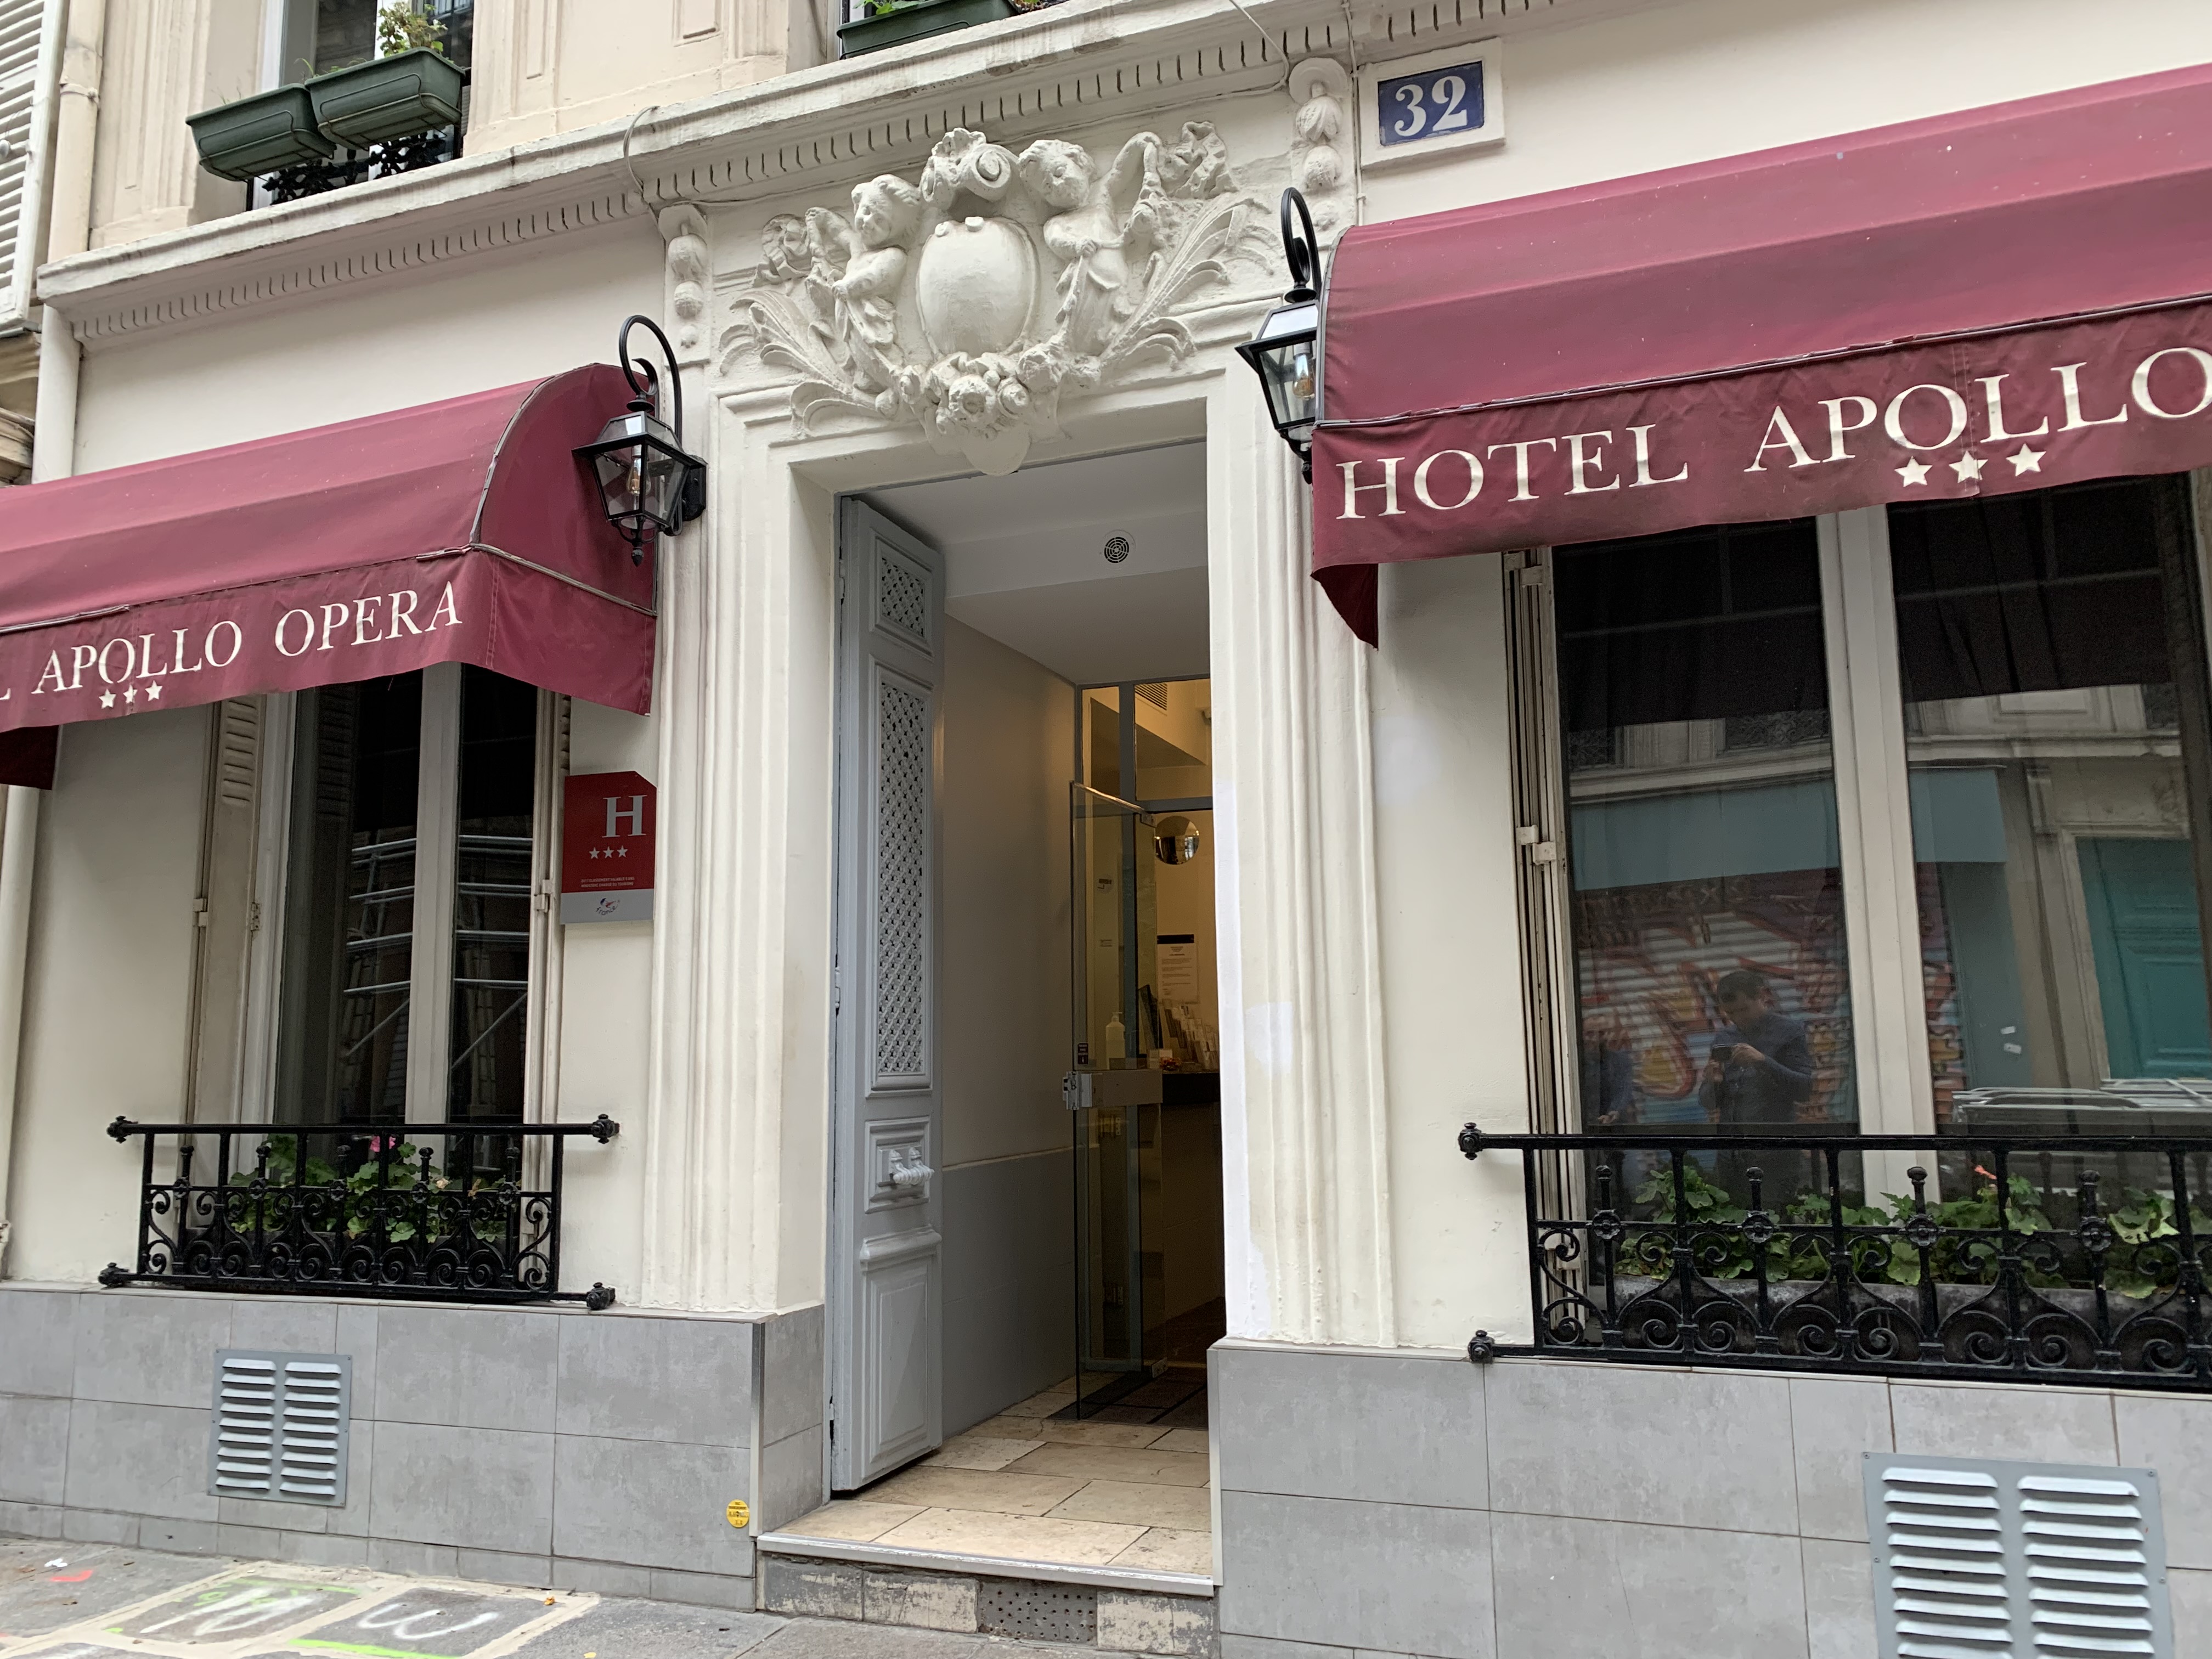 Hotel Apollo Opéra - Home